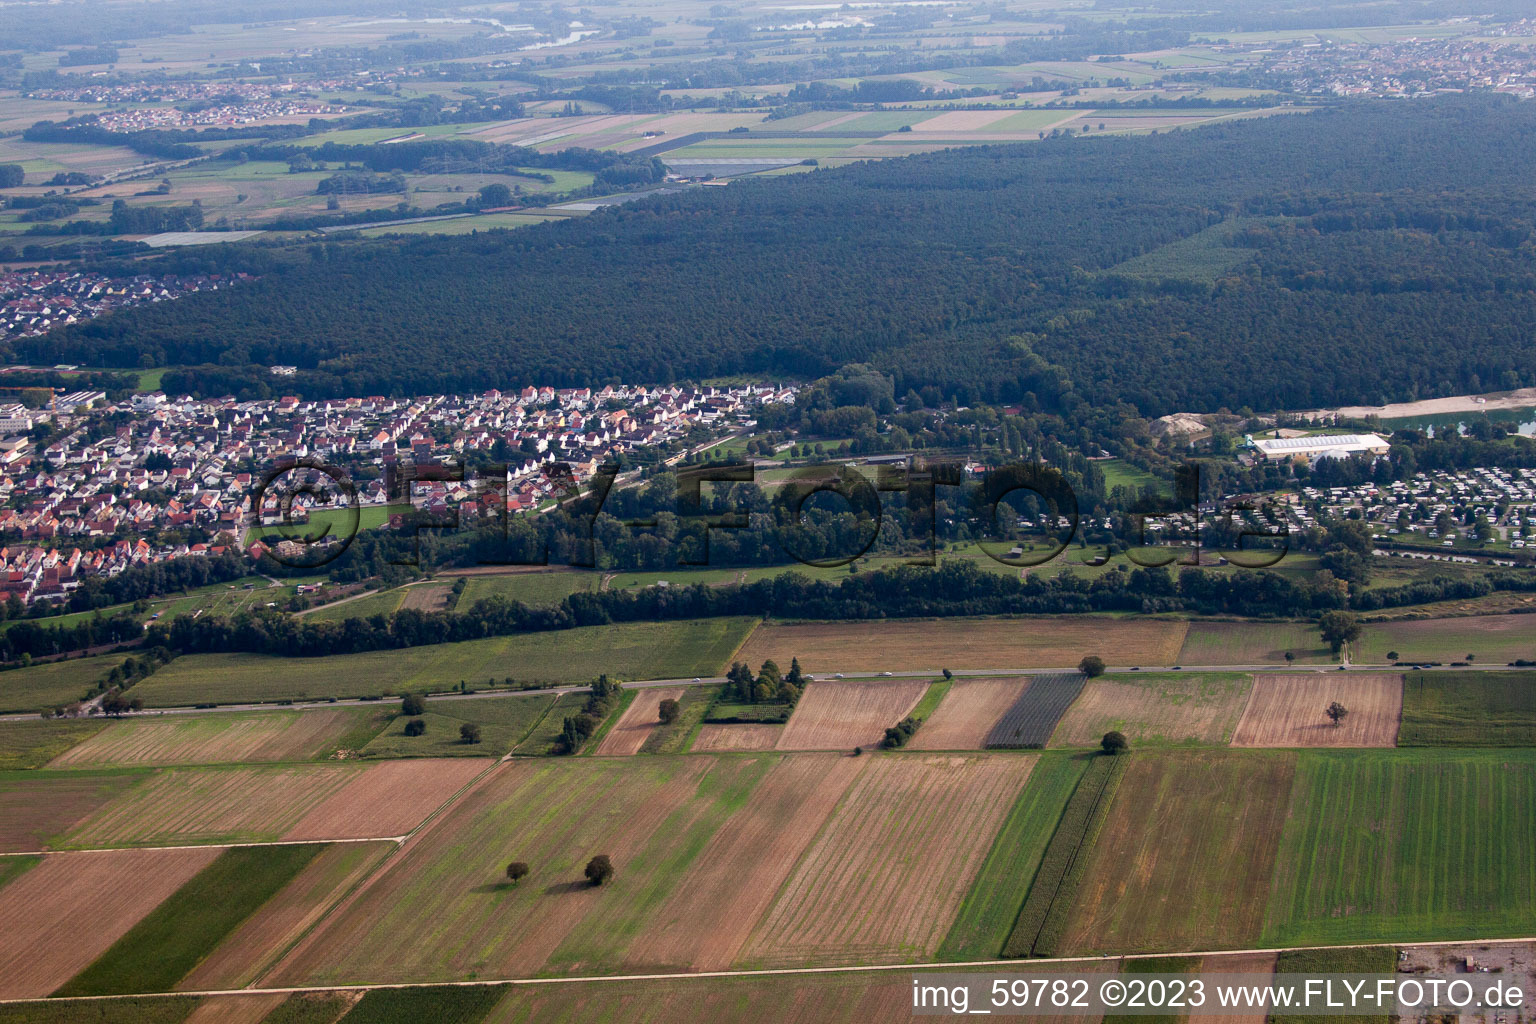 Vue aérienne de Ferme d'autruches Mhou à la base de loisirs Moby Dick à Rülzheim dans le département Rhénanie-Palatinat, Allemagne